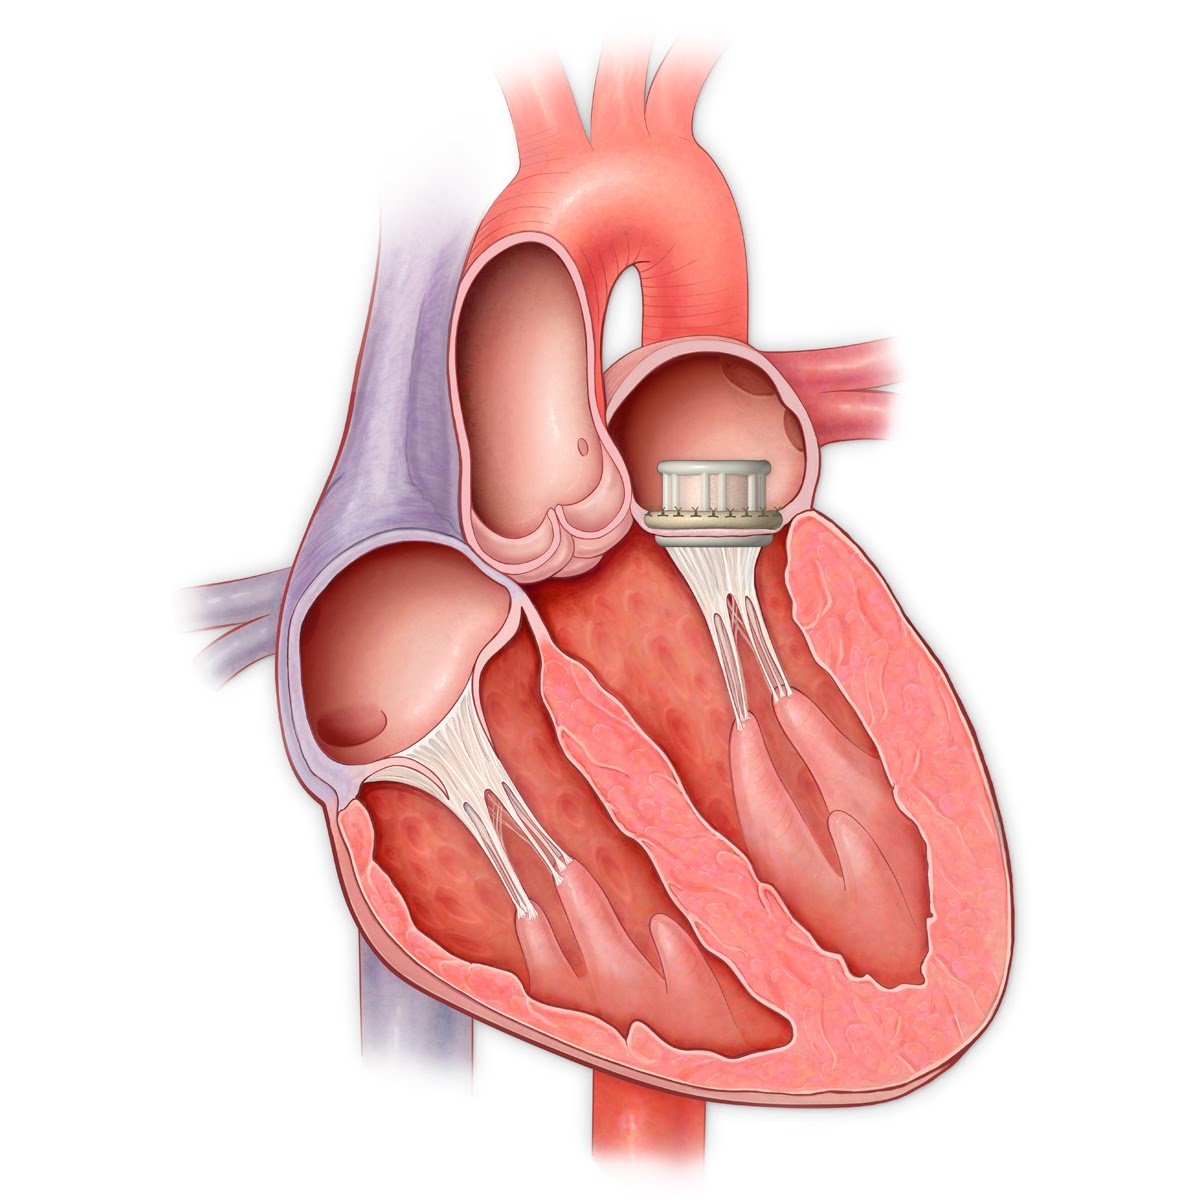 Митральный клапан после операции. Ммтральный клапан сердце. Митральный клапан сердца. Митральный и аортальный клапан. Митральный клапан и аортальный клапан.